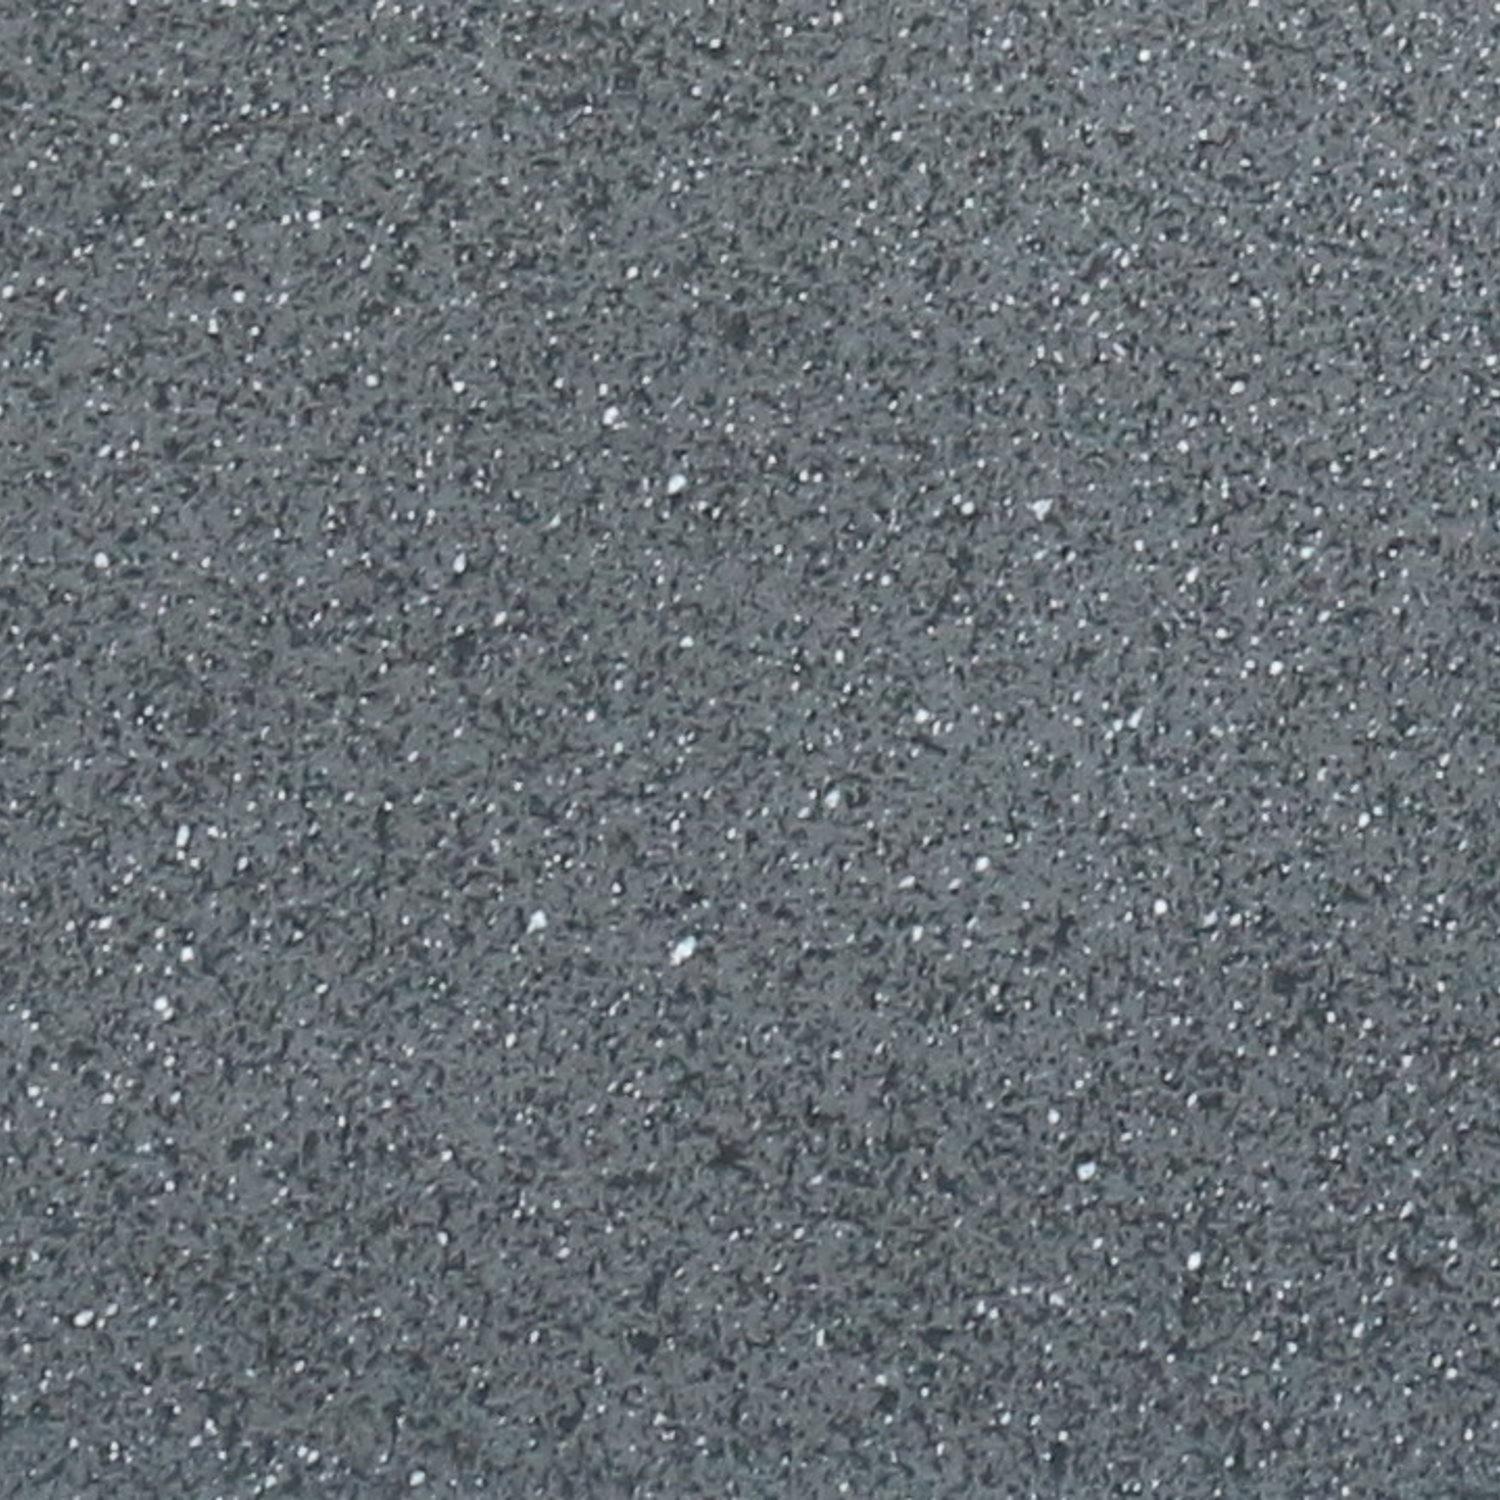 Textured Concrete Effect Trough Grey Outdoor Planter by Idealist Lite L60 W17 H17.5 cm, 17.9L - citiplants.com